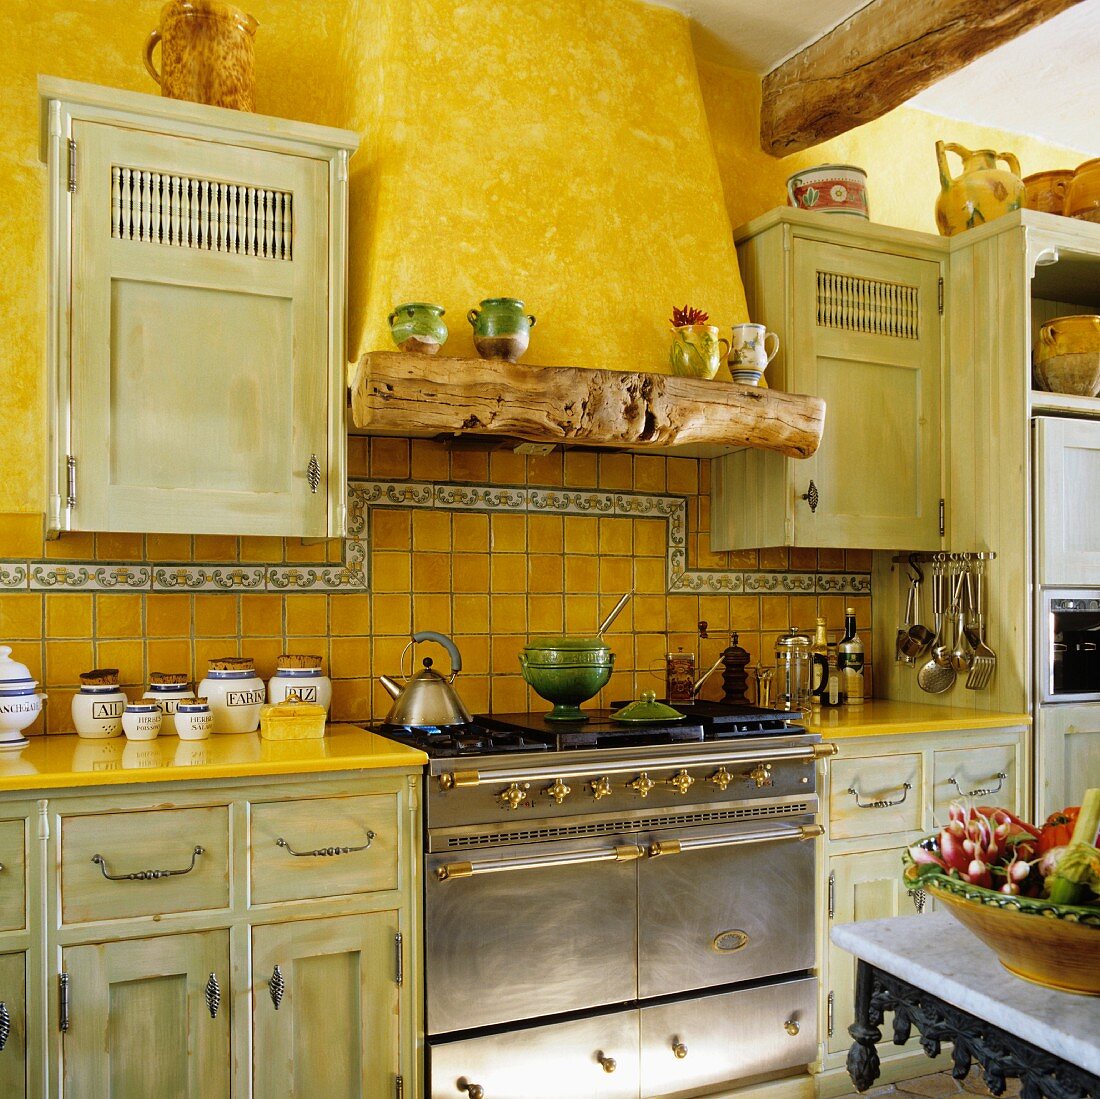 Alte Landhausküche mit kanariengelber Wand und antikem Edelstahlherd mit gemauertem Abzug